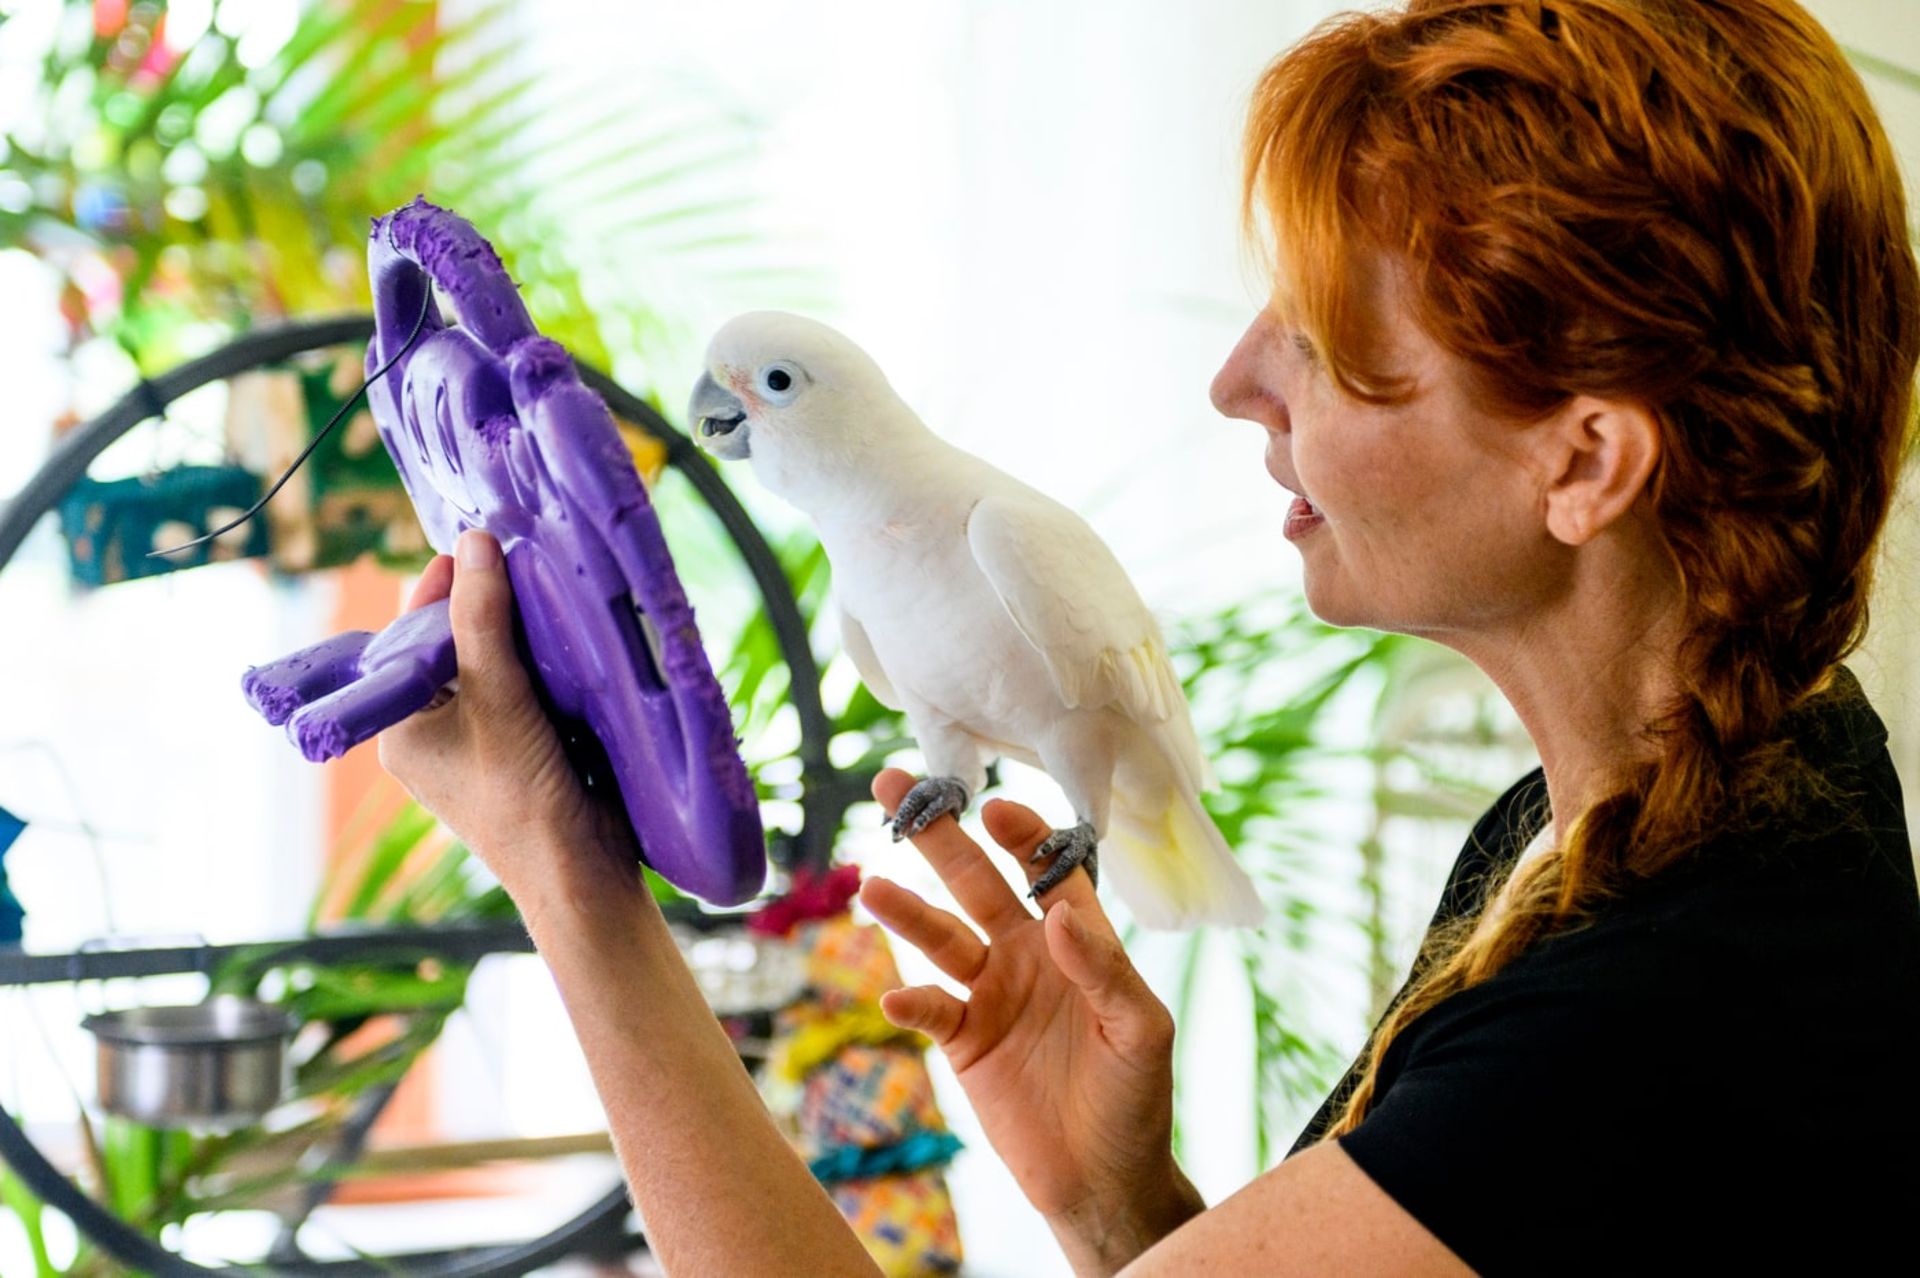 جنیفر کونا در حال برقراری تماس تصویری برای طوطی کاکادو